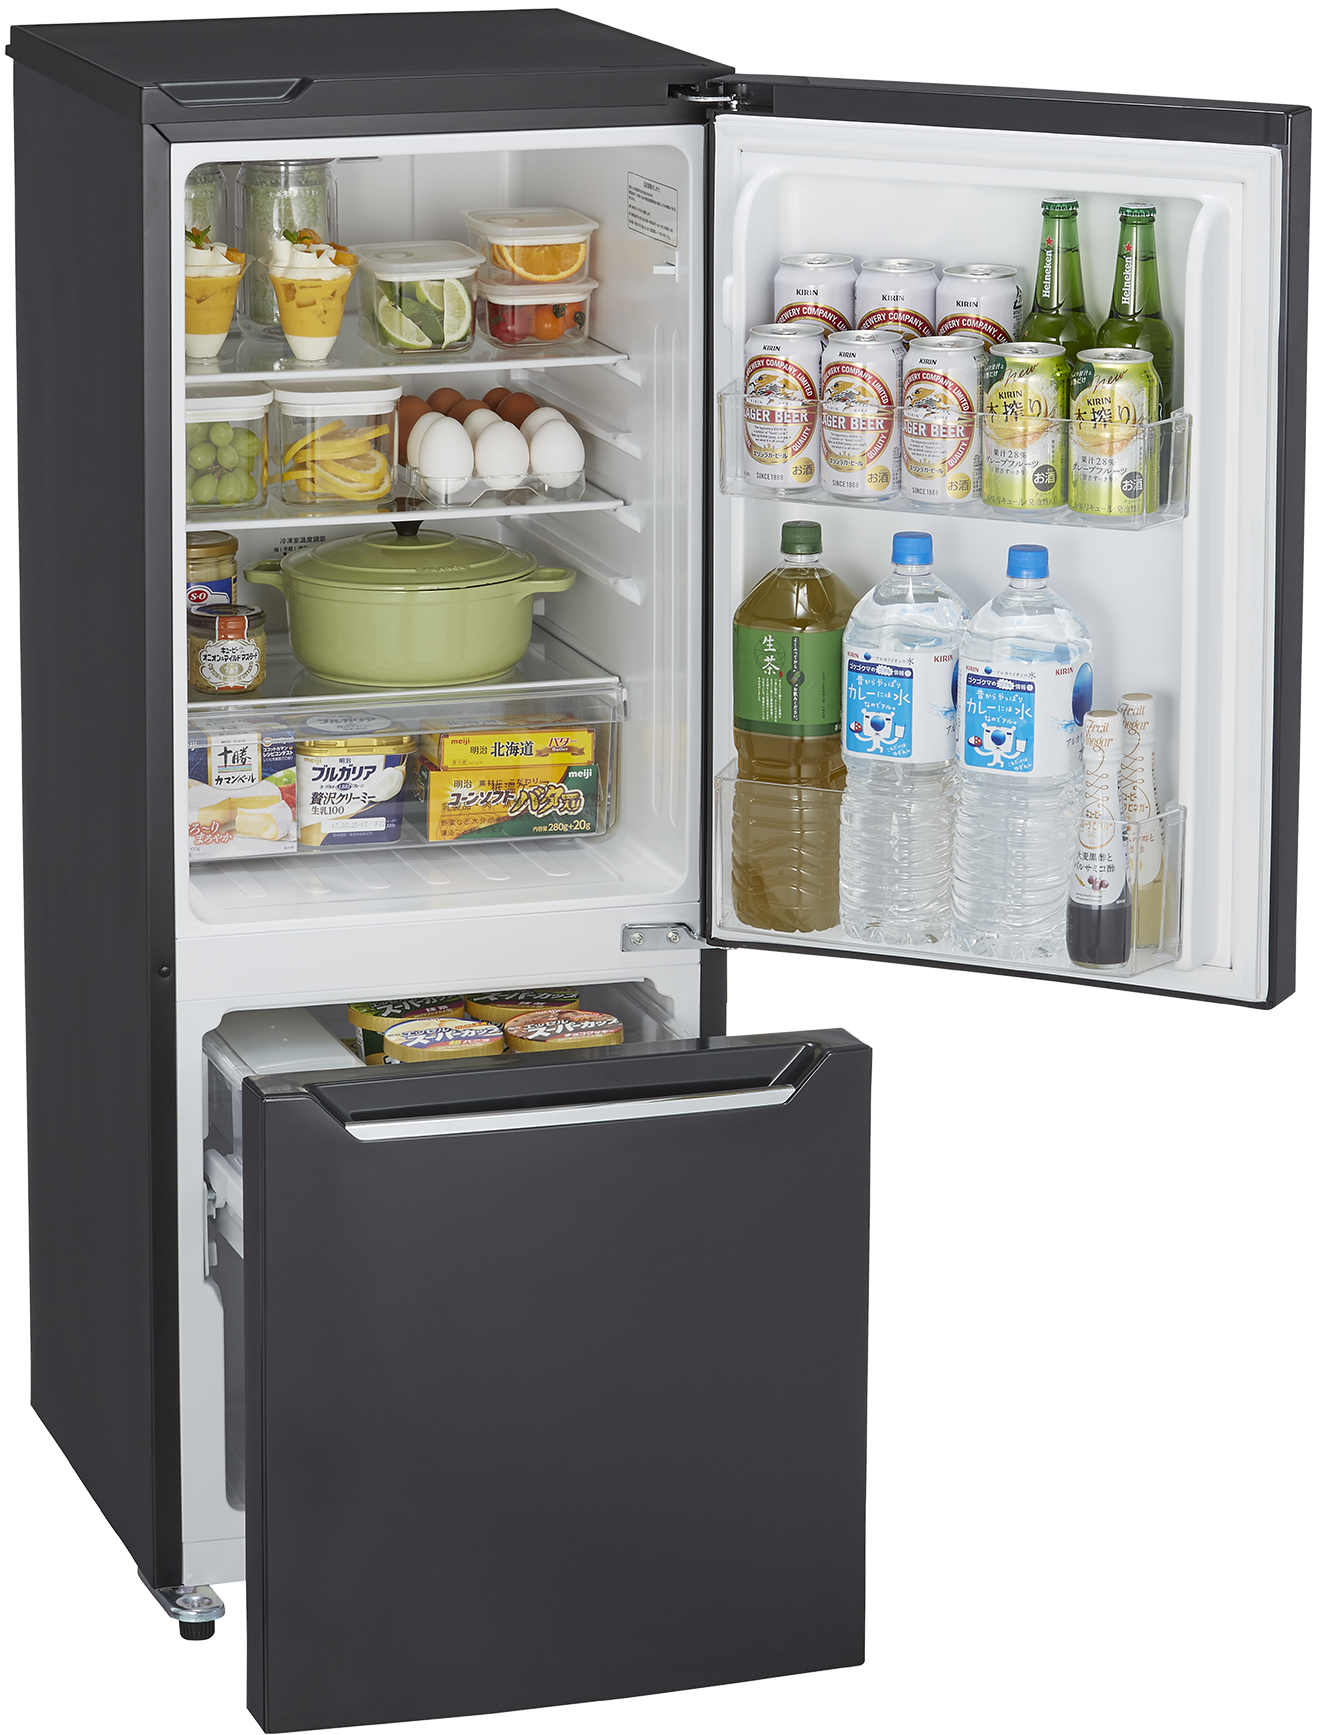 生活家電 冷蔵庫 150L HR-D15CB 冷凍冷蔵庫 | ハイセンスジャパン株式会社